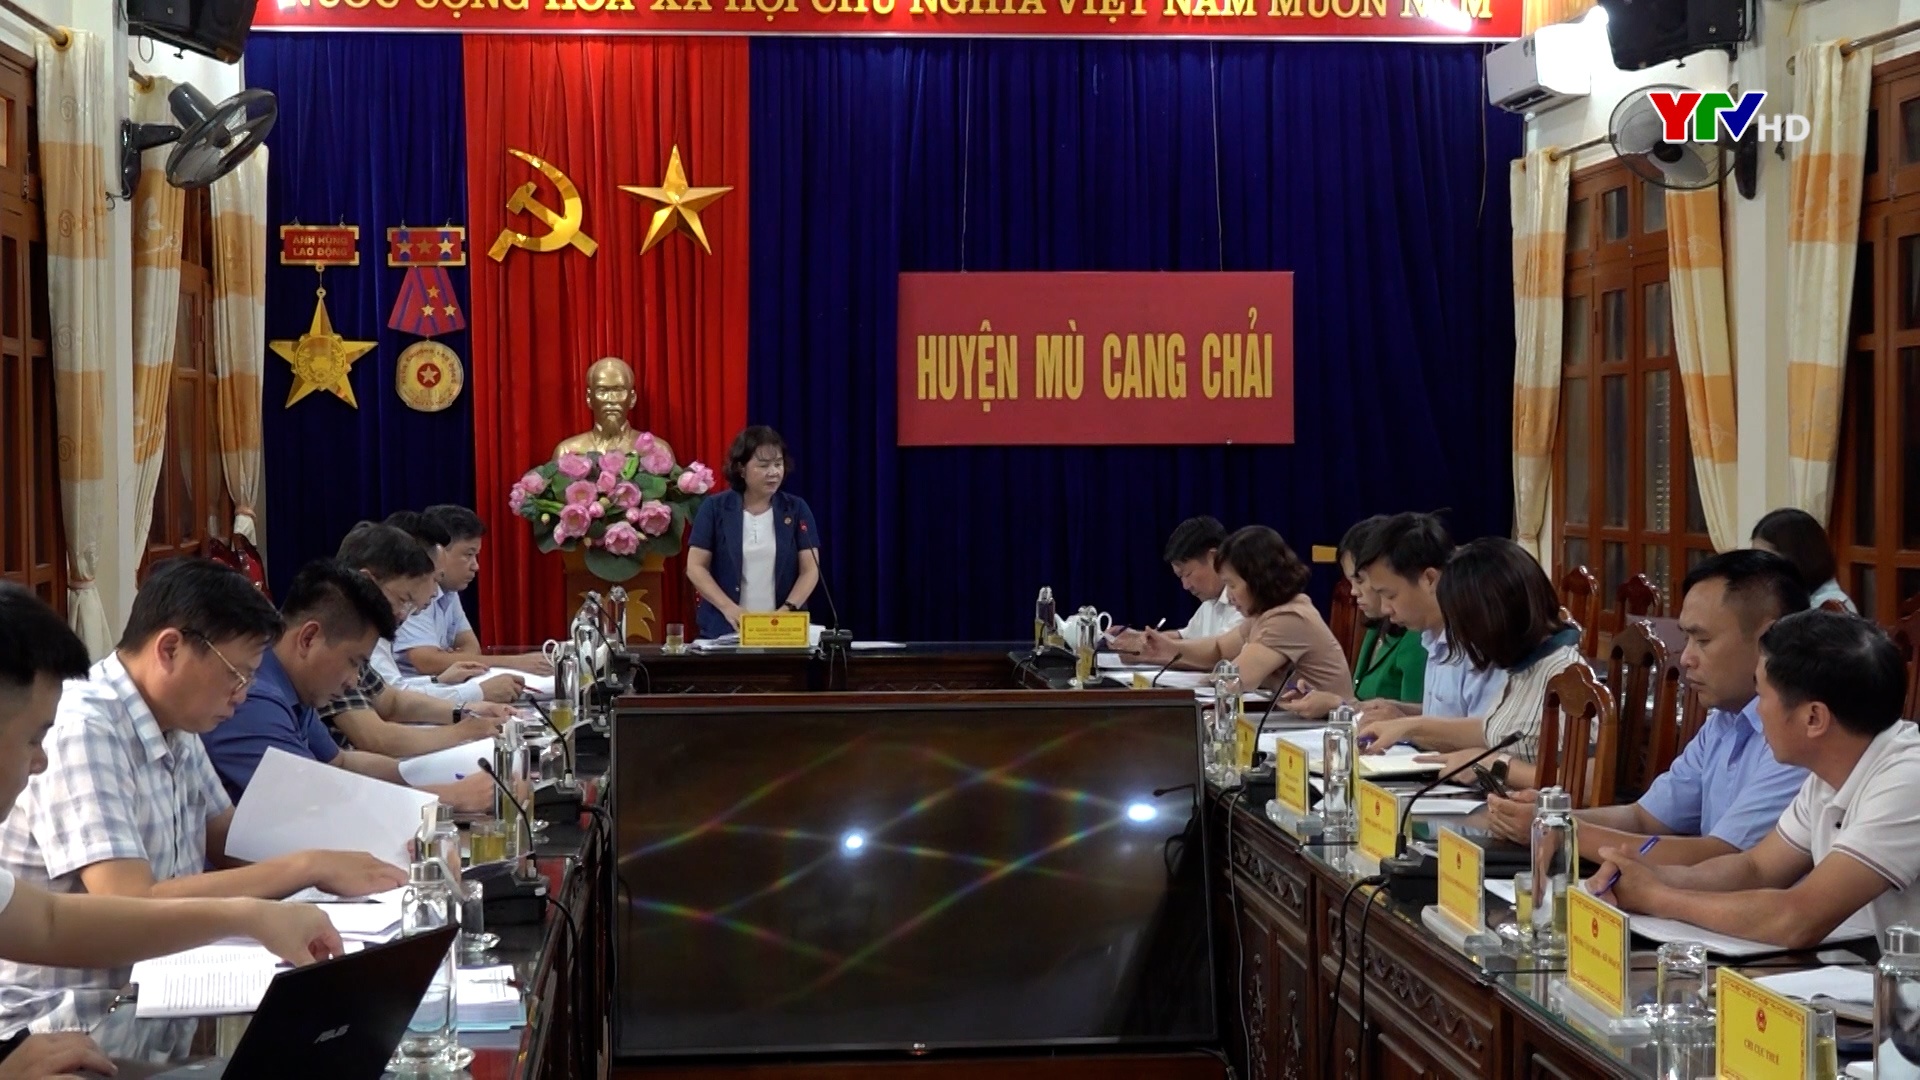 Đồng chí Phó Chủ tịch HĐND tỉnh Hoàng Thị Thanh Bình giám sát chuyên đề tại huyện Mù Cang Chải